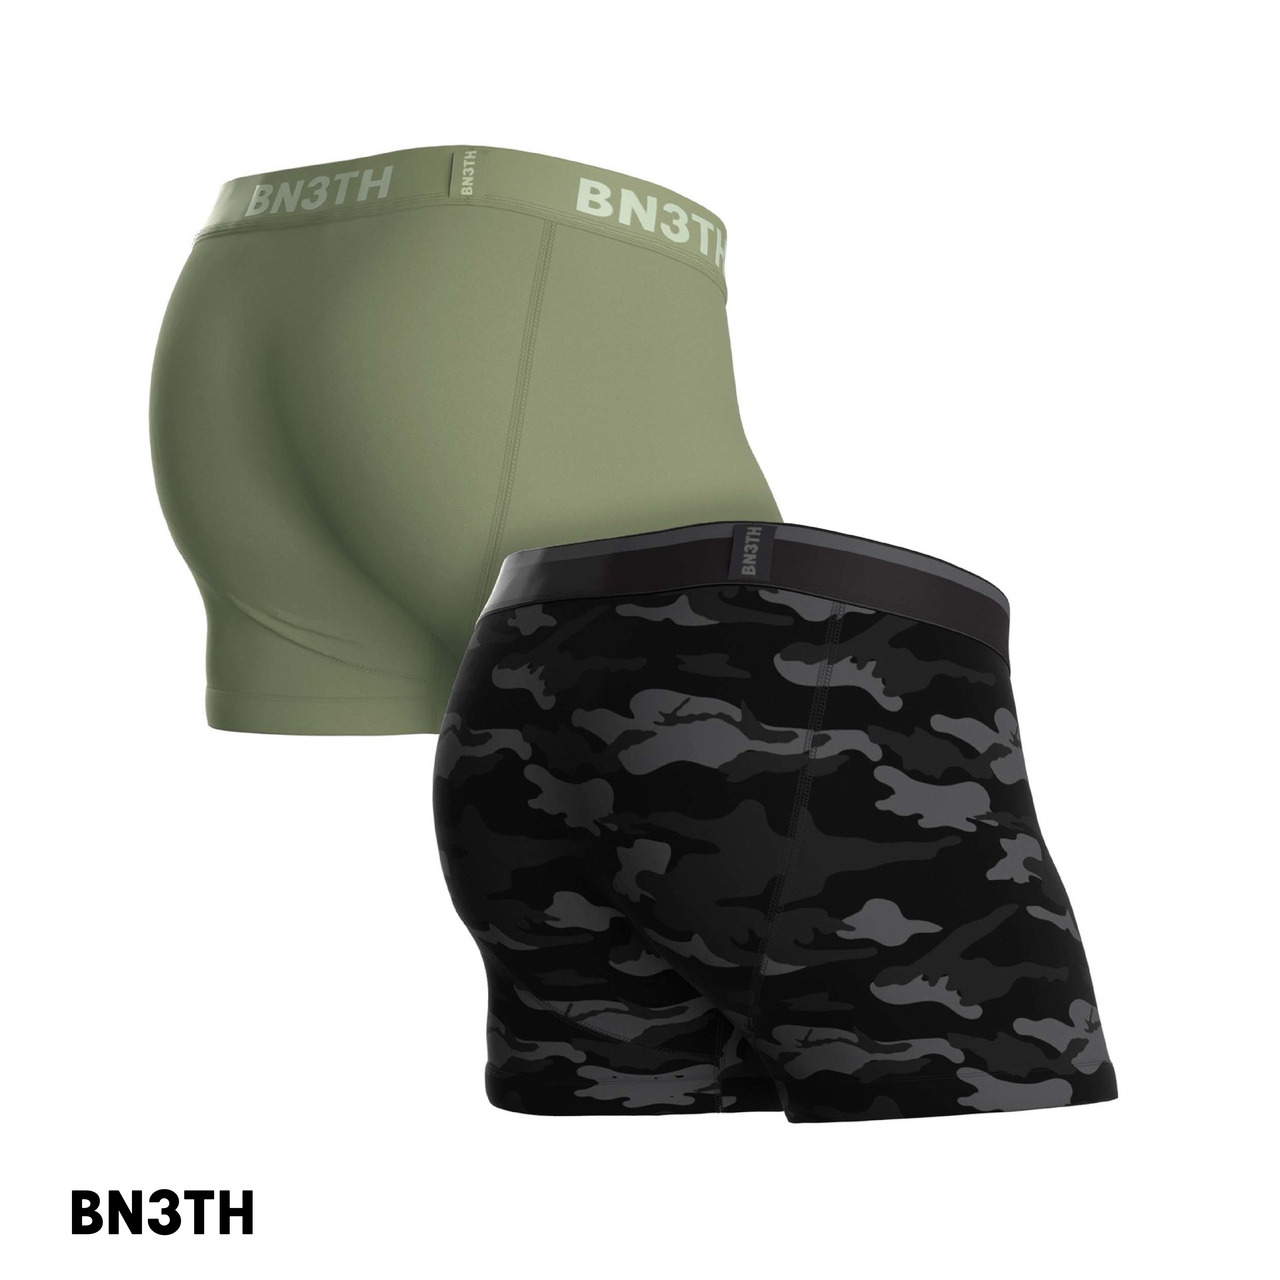 BN3TH 畢尼適 經典短版兩件組-黑磨迷彩X松樹綠